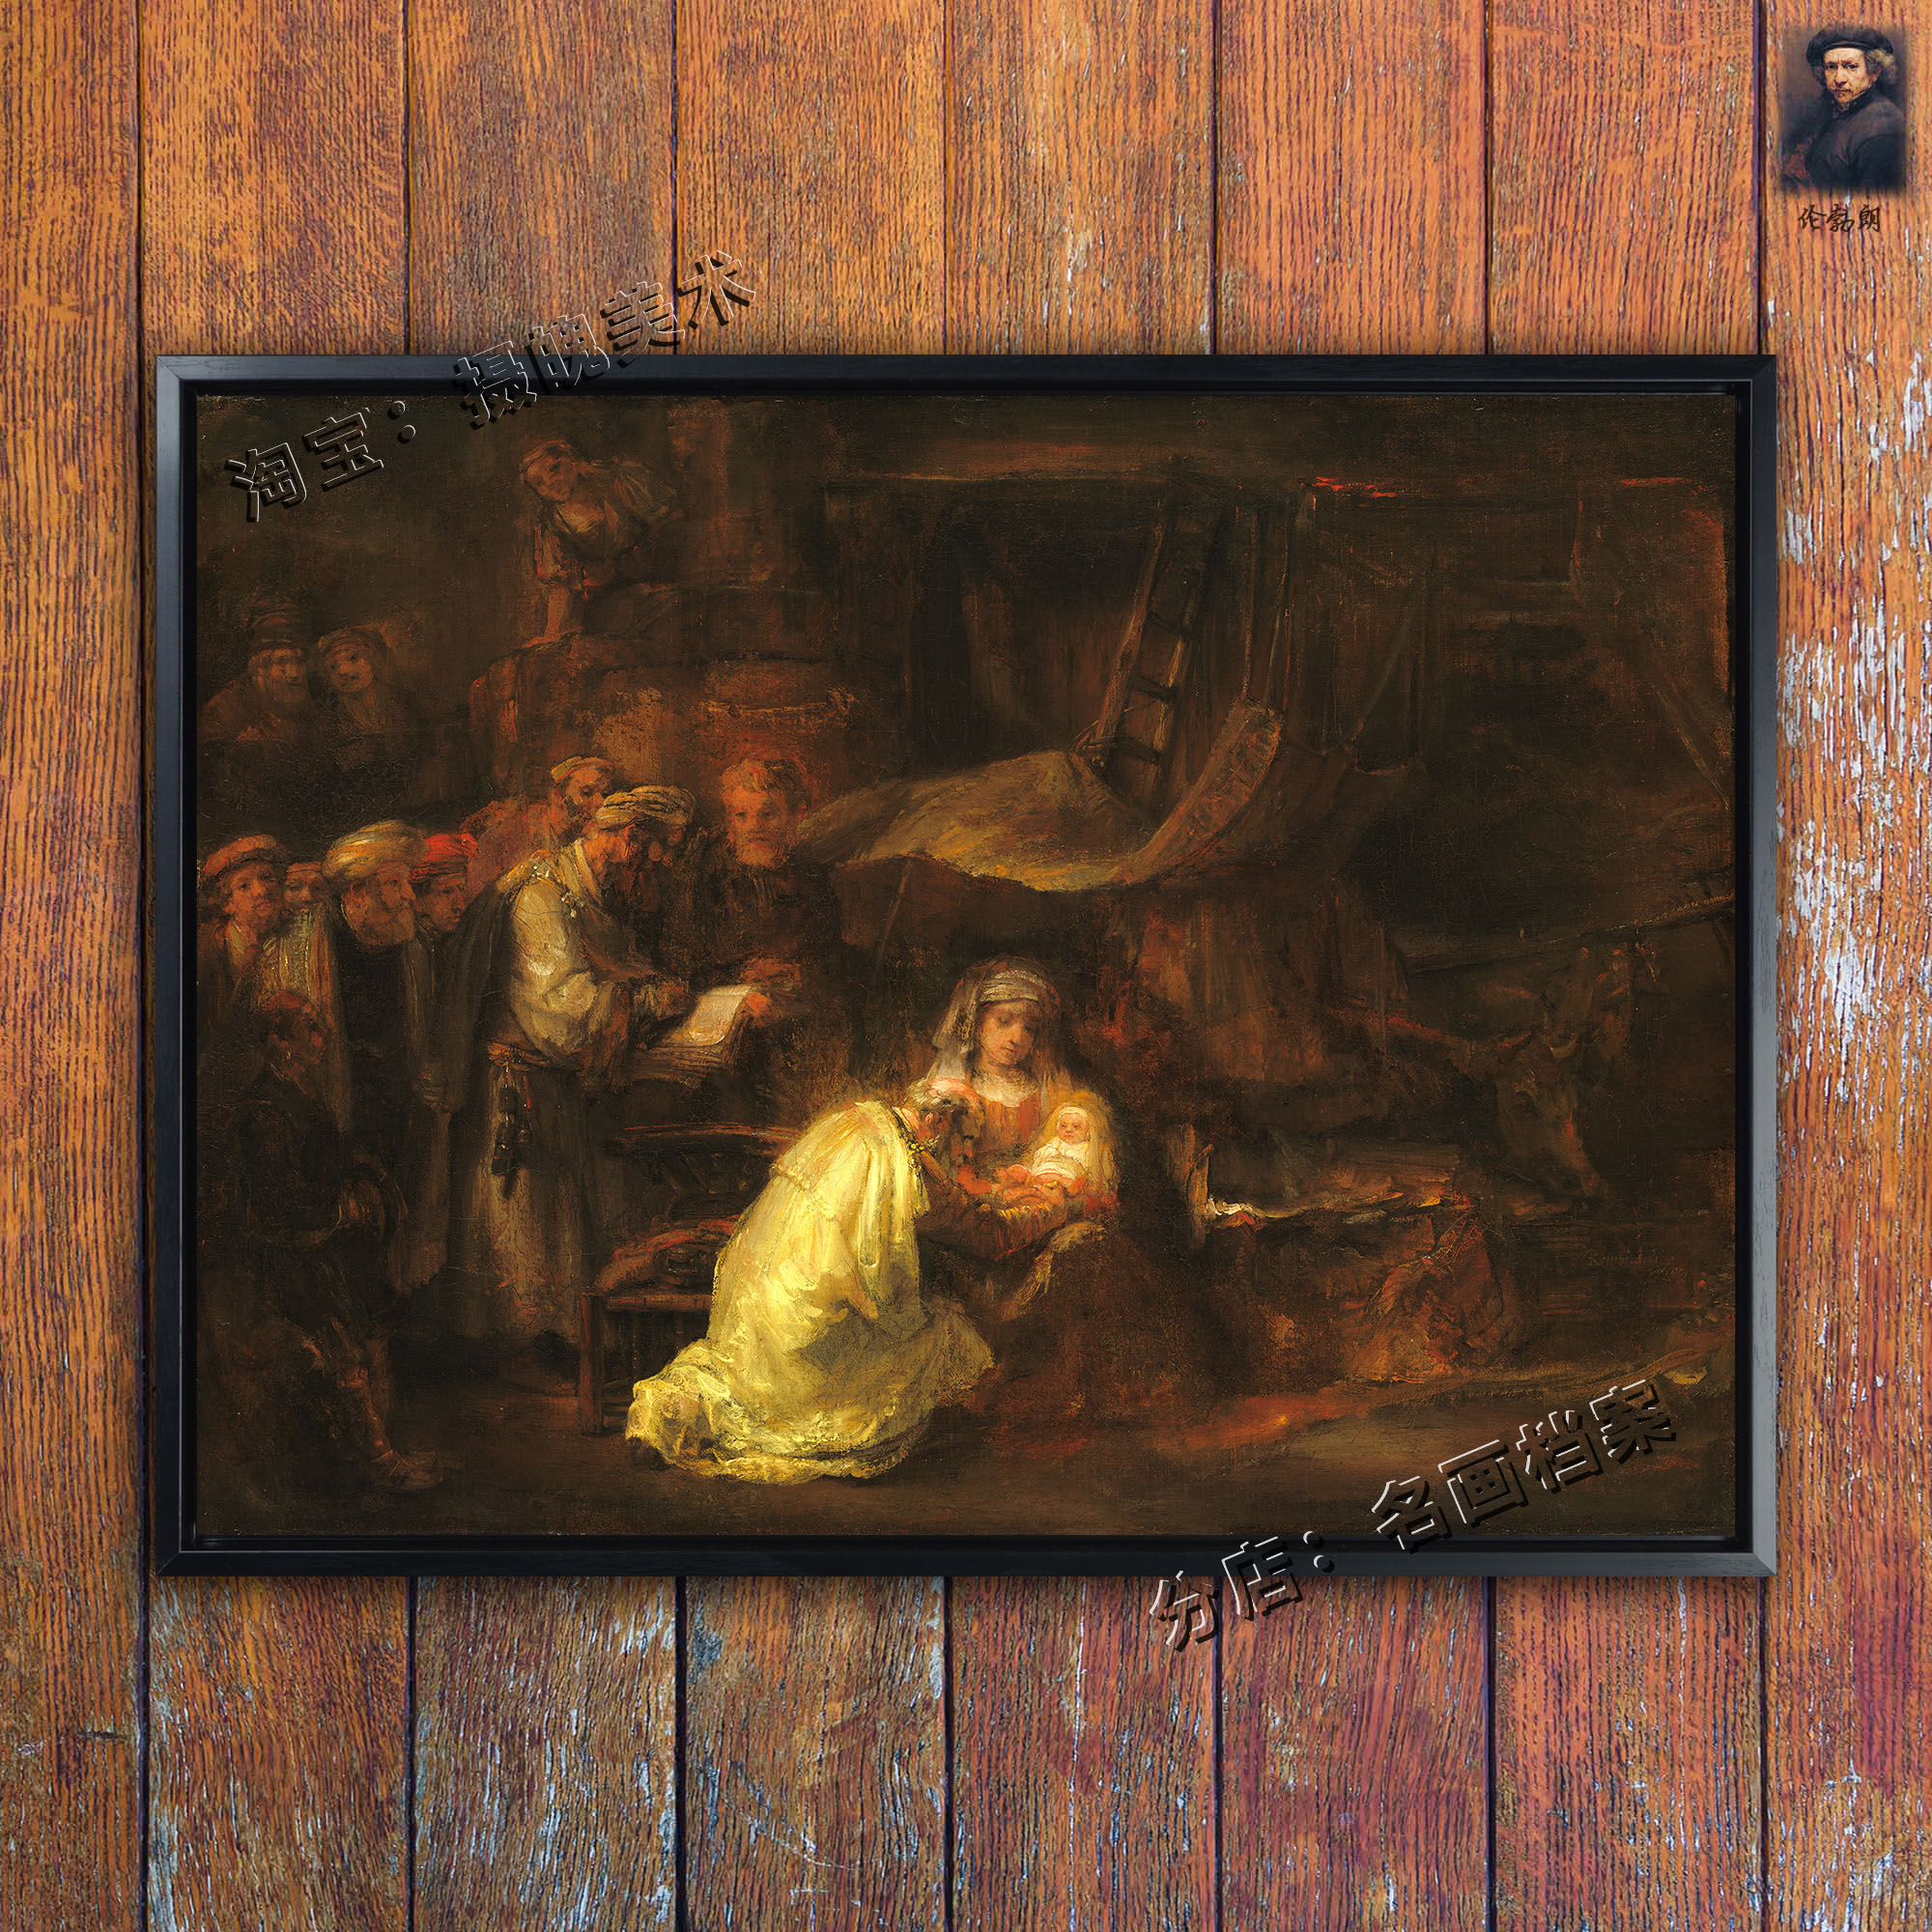 割礼 circumcision 伦勃朗 风俗画 Rembrandt 世界名画 西方油画